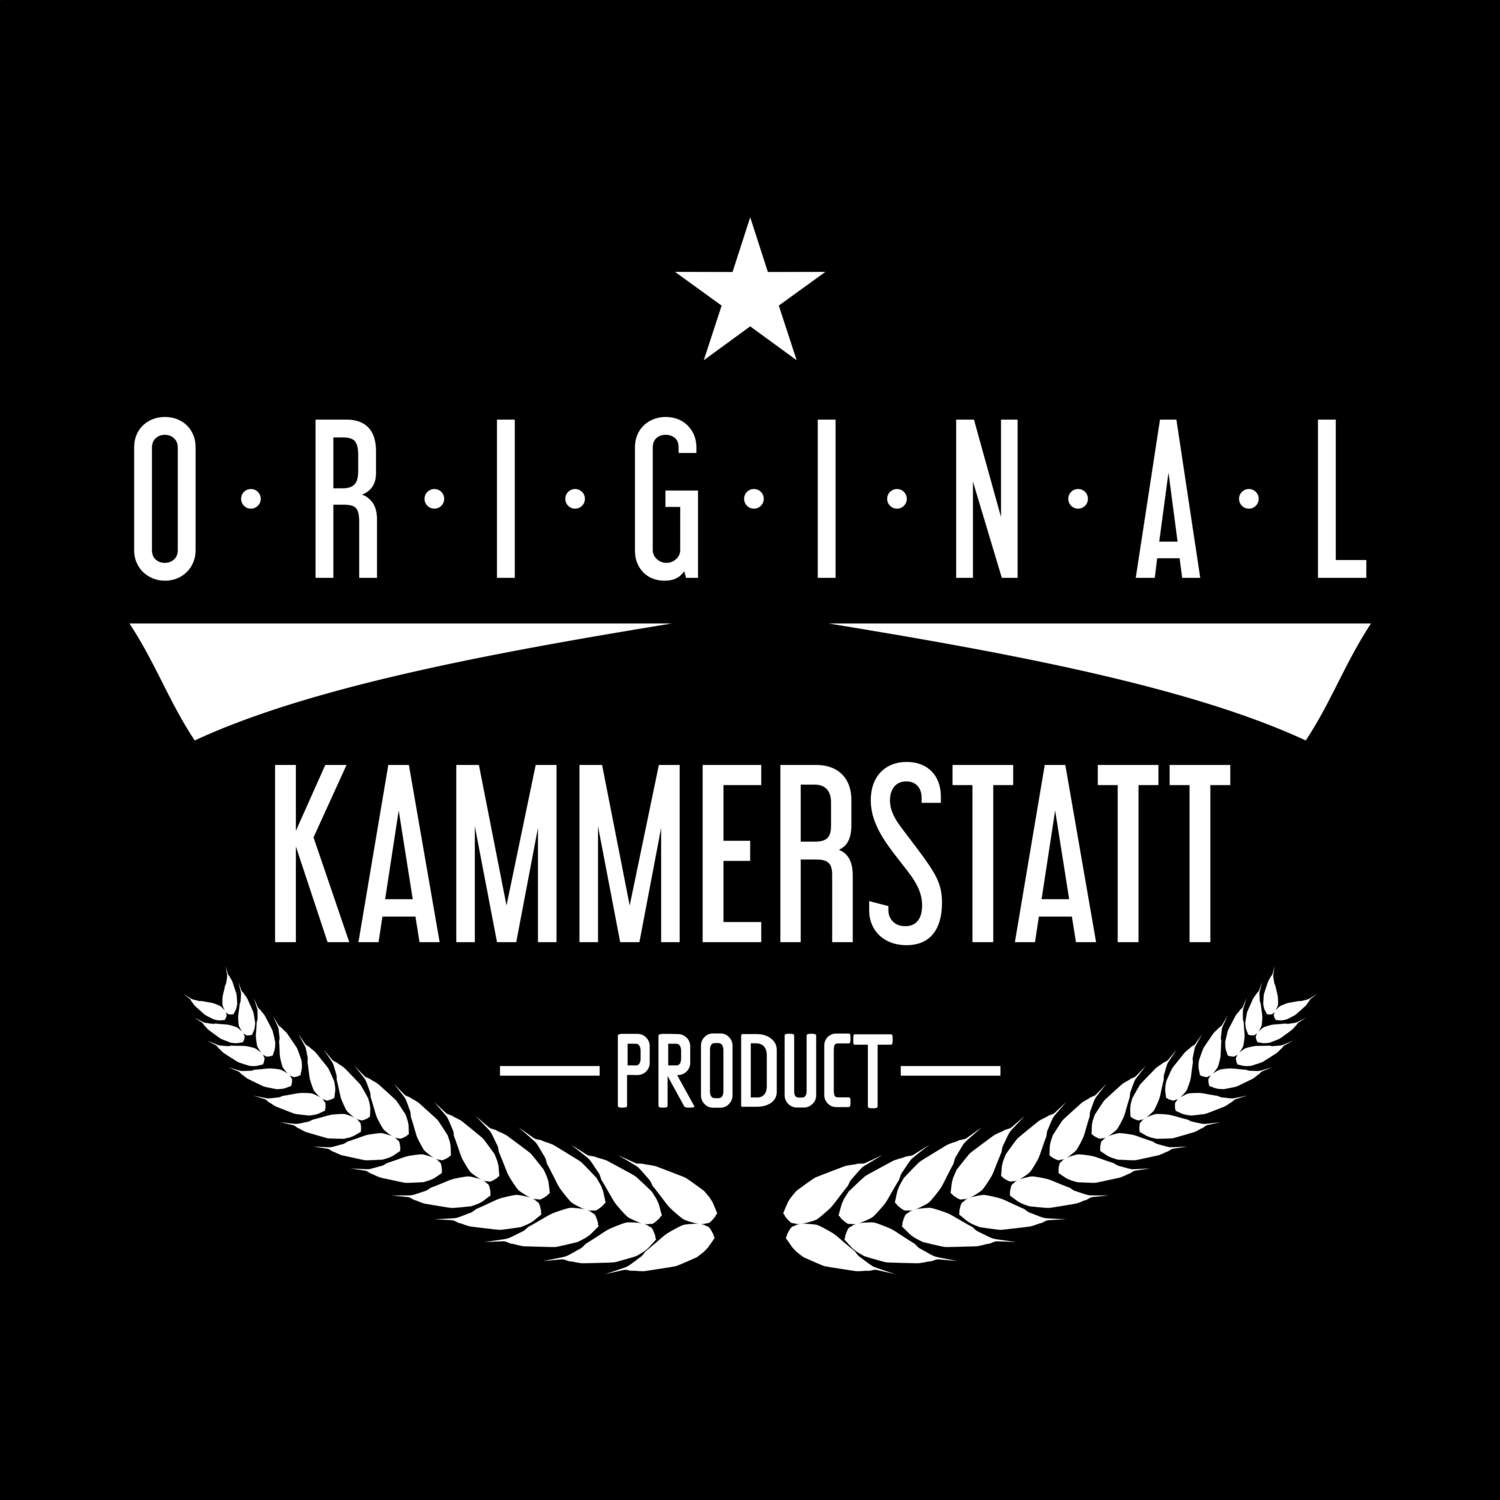 Kammerstatt T-Shirt »Original Product«